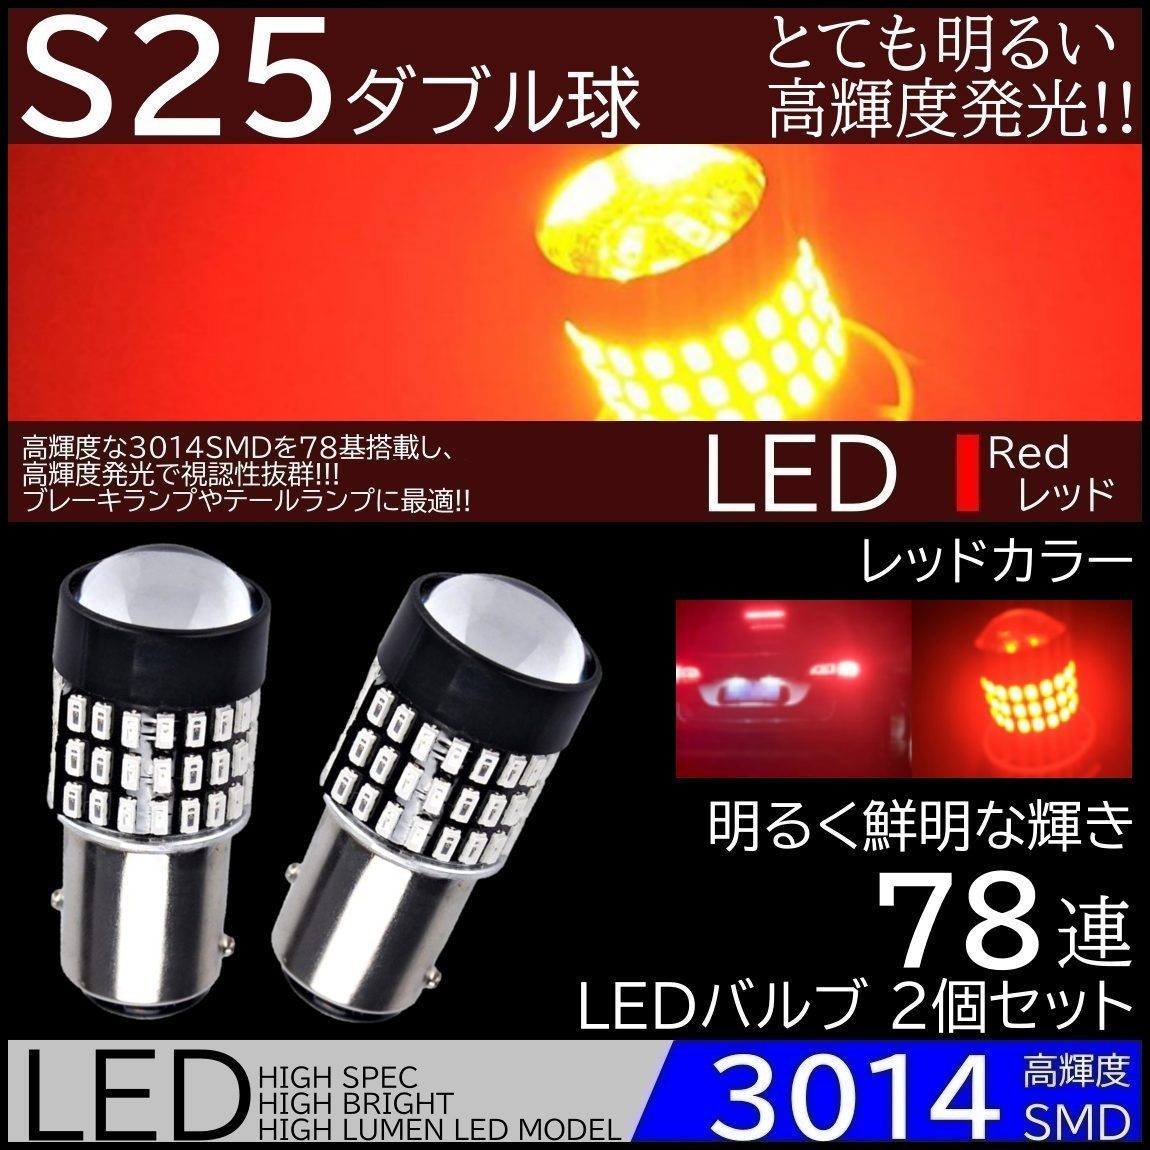 爆光LED S25 ダブル 78連 ブレーキランプ テールランプ 赤 レッド 高輝度SMD ストップランプ 無極性 2個セット